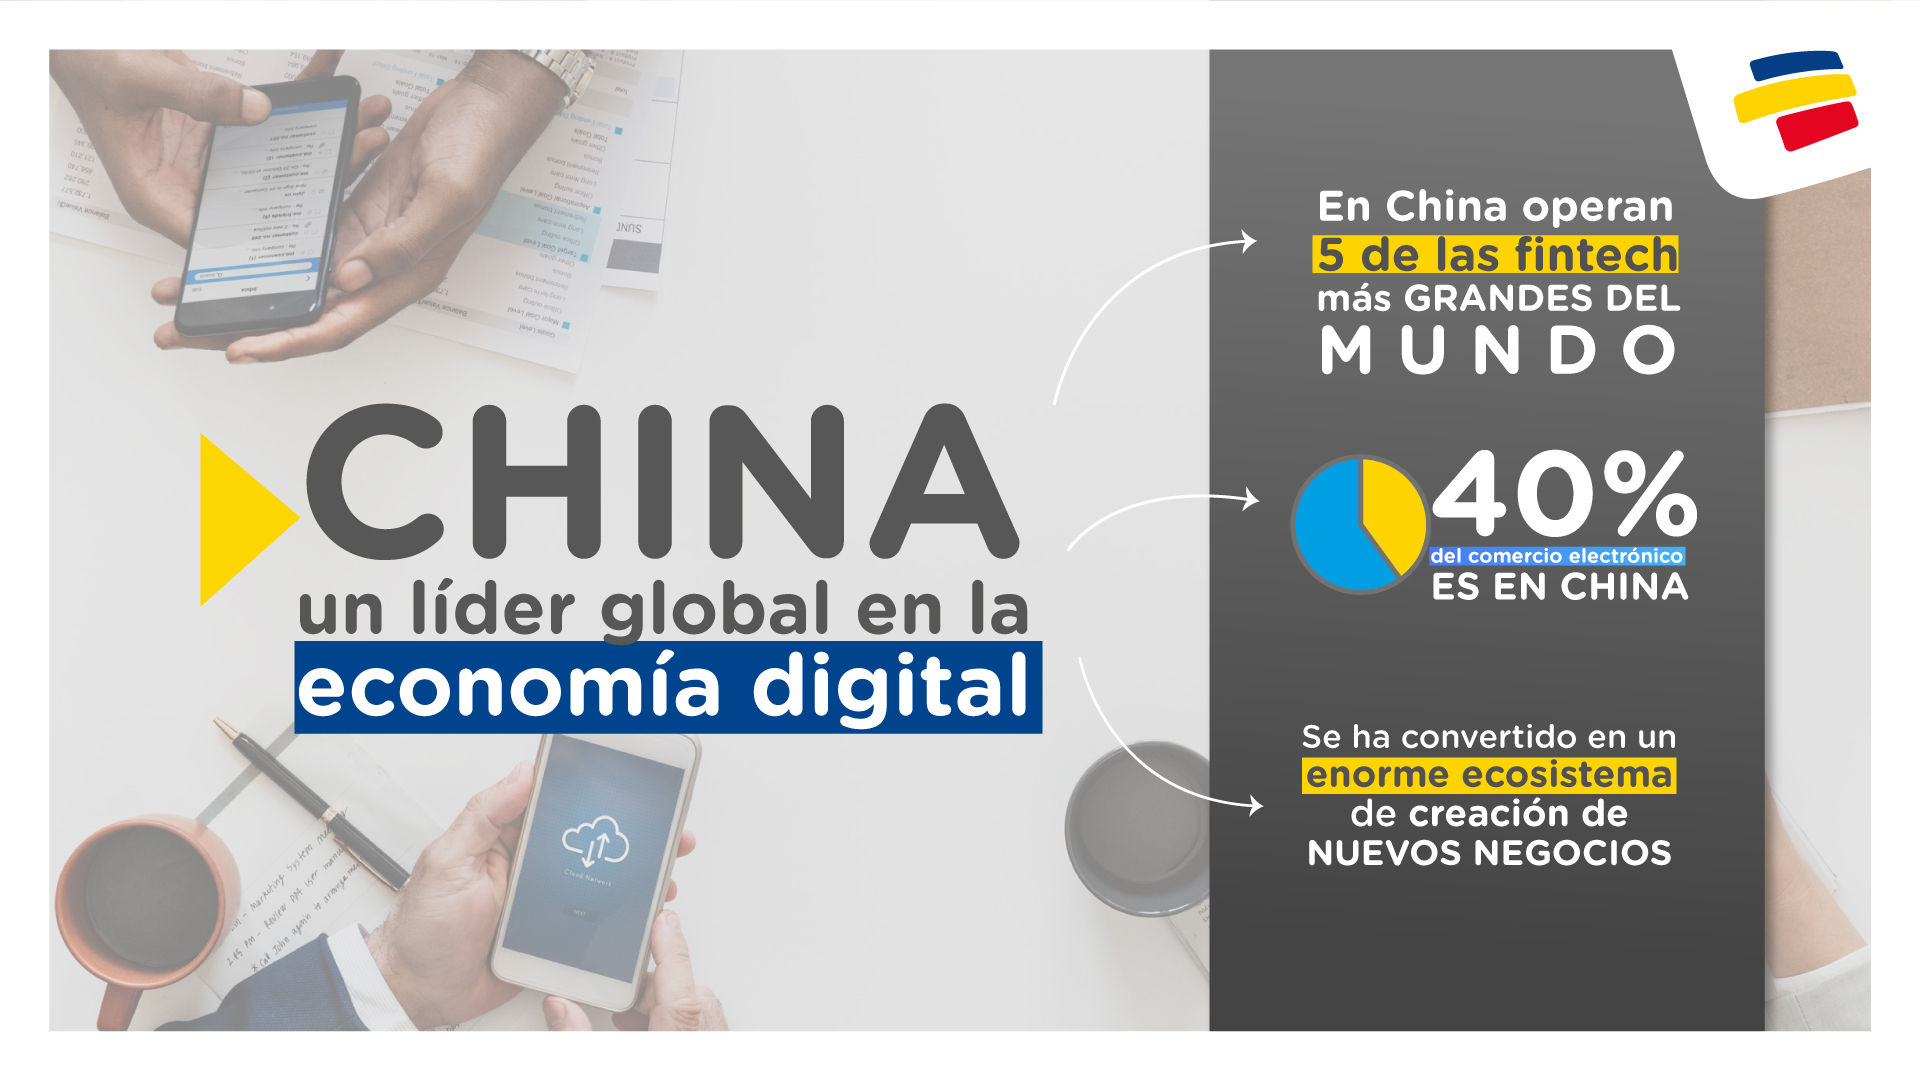 Infografía- China- Un lider global en la economia digital